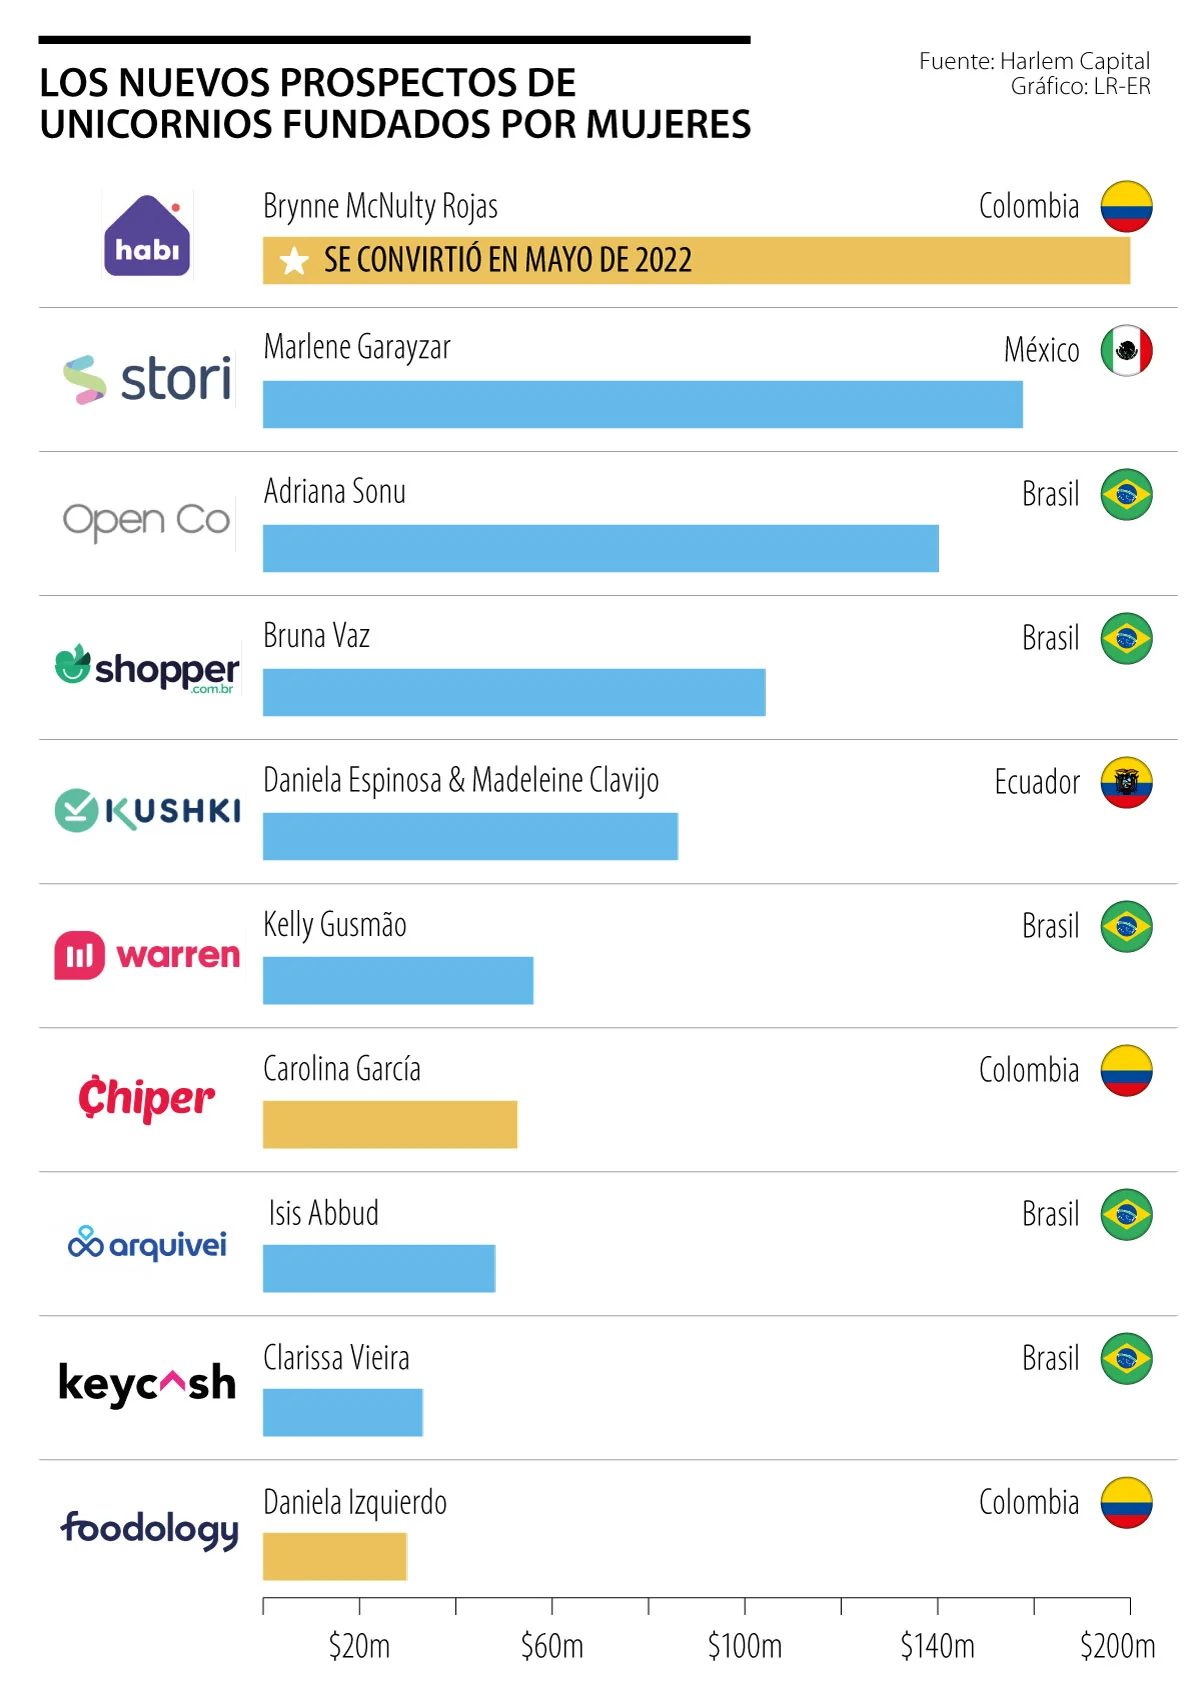 Habi, Stori y Open Co lideran el top 10 de las startups latinas fundadas por mujeres